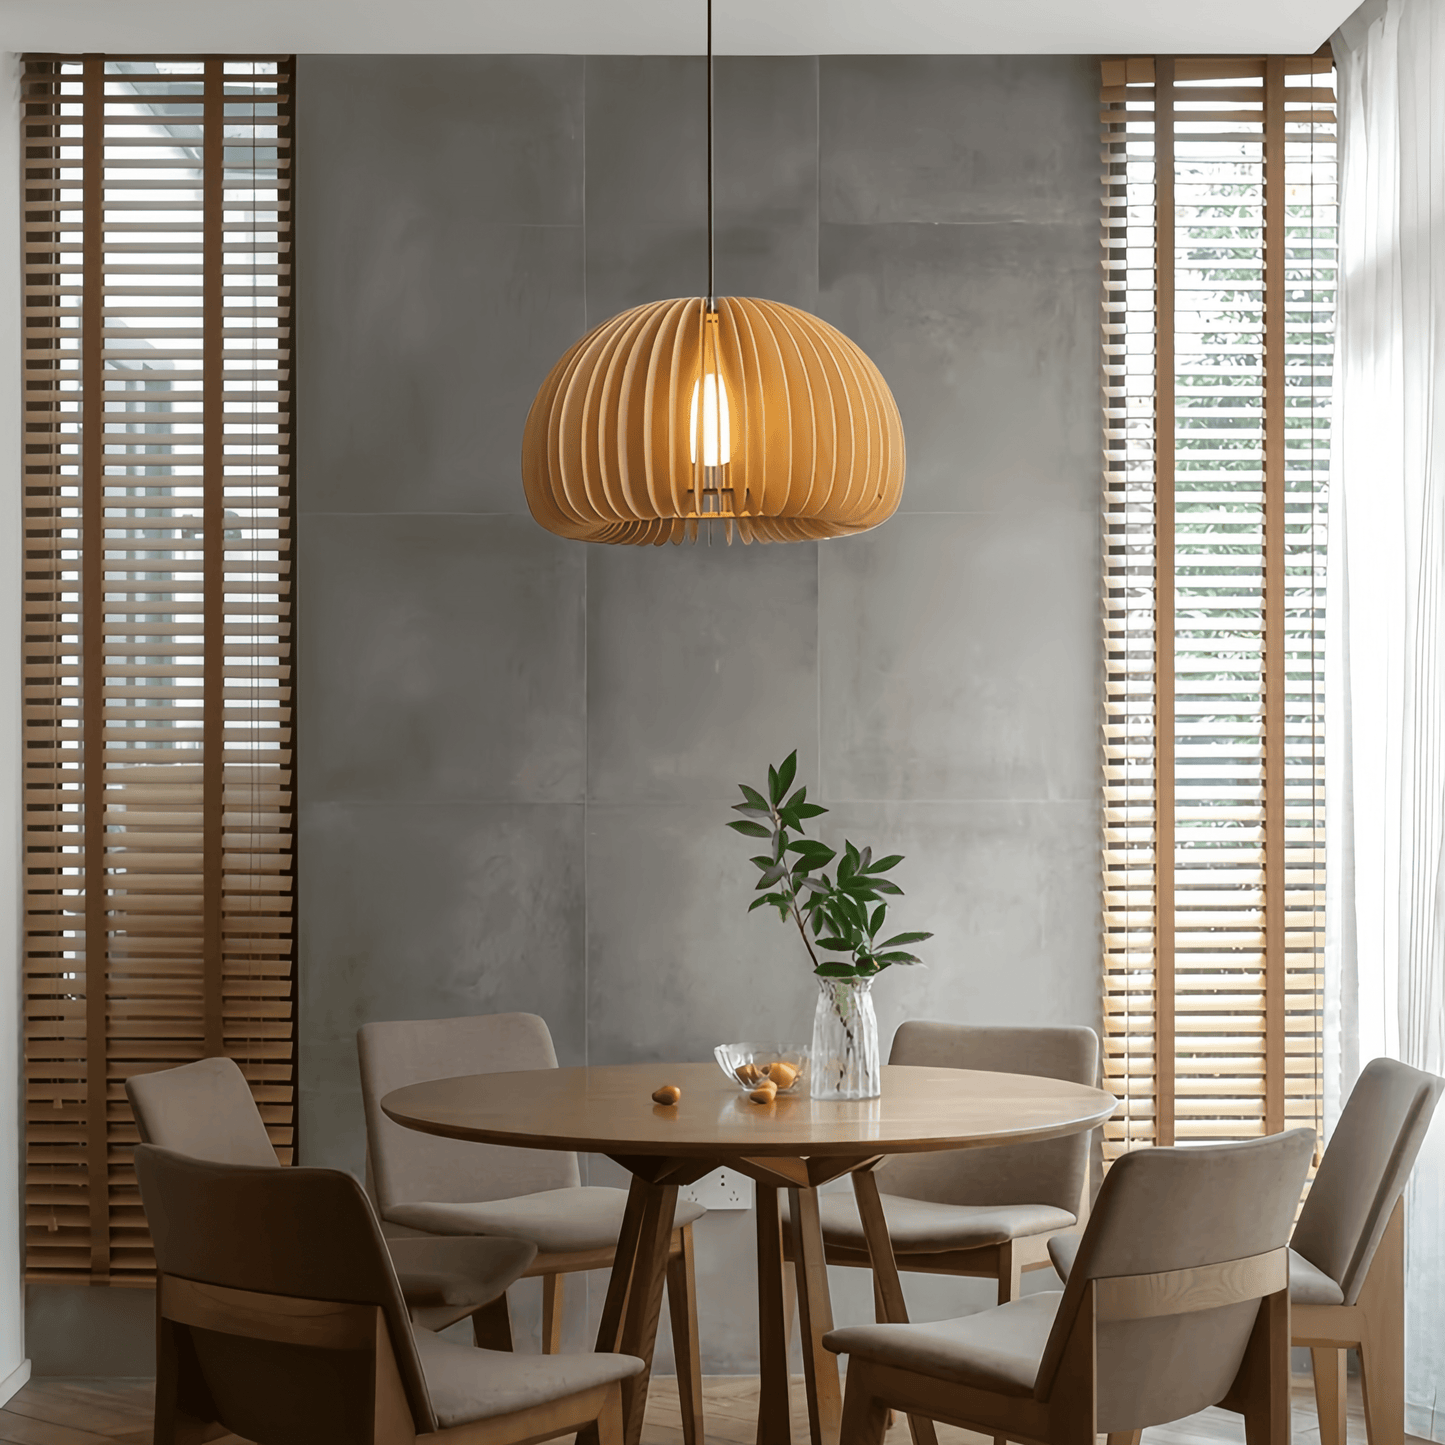 Customizable Wood Pendant Light: Adjustable Elegance